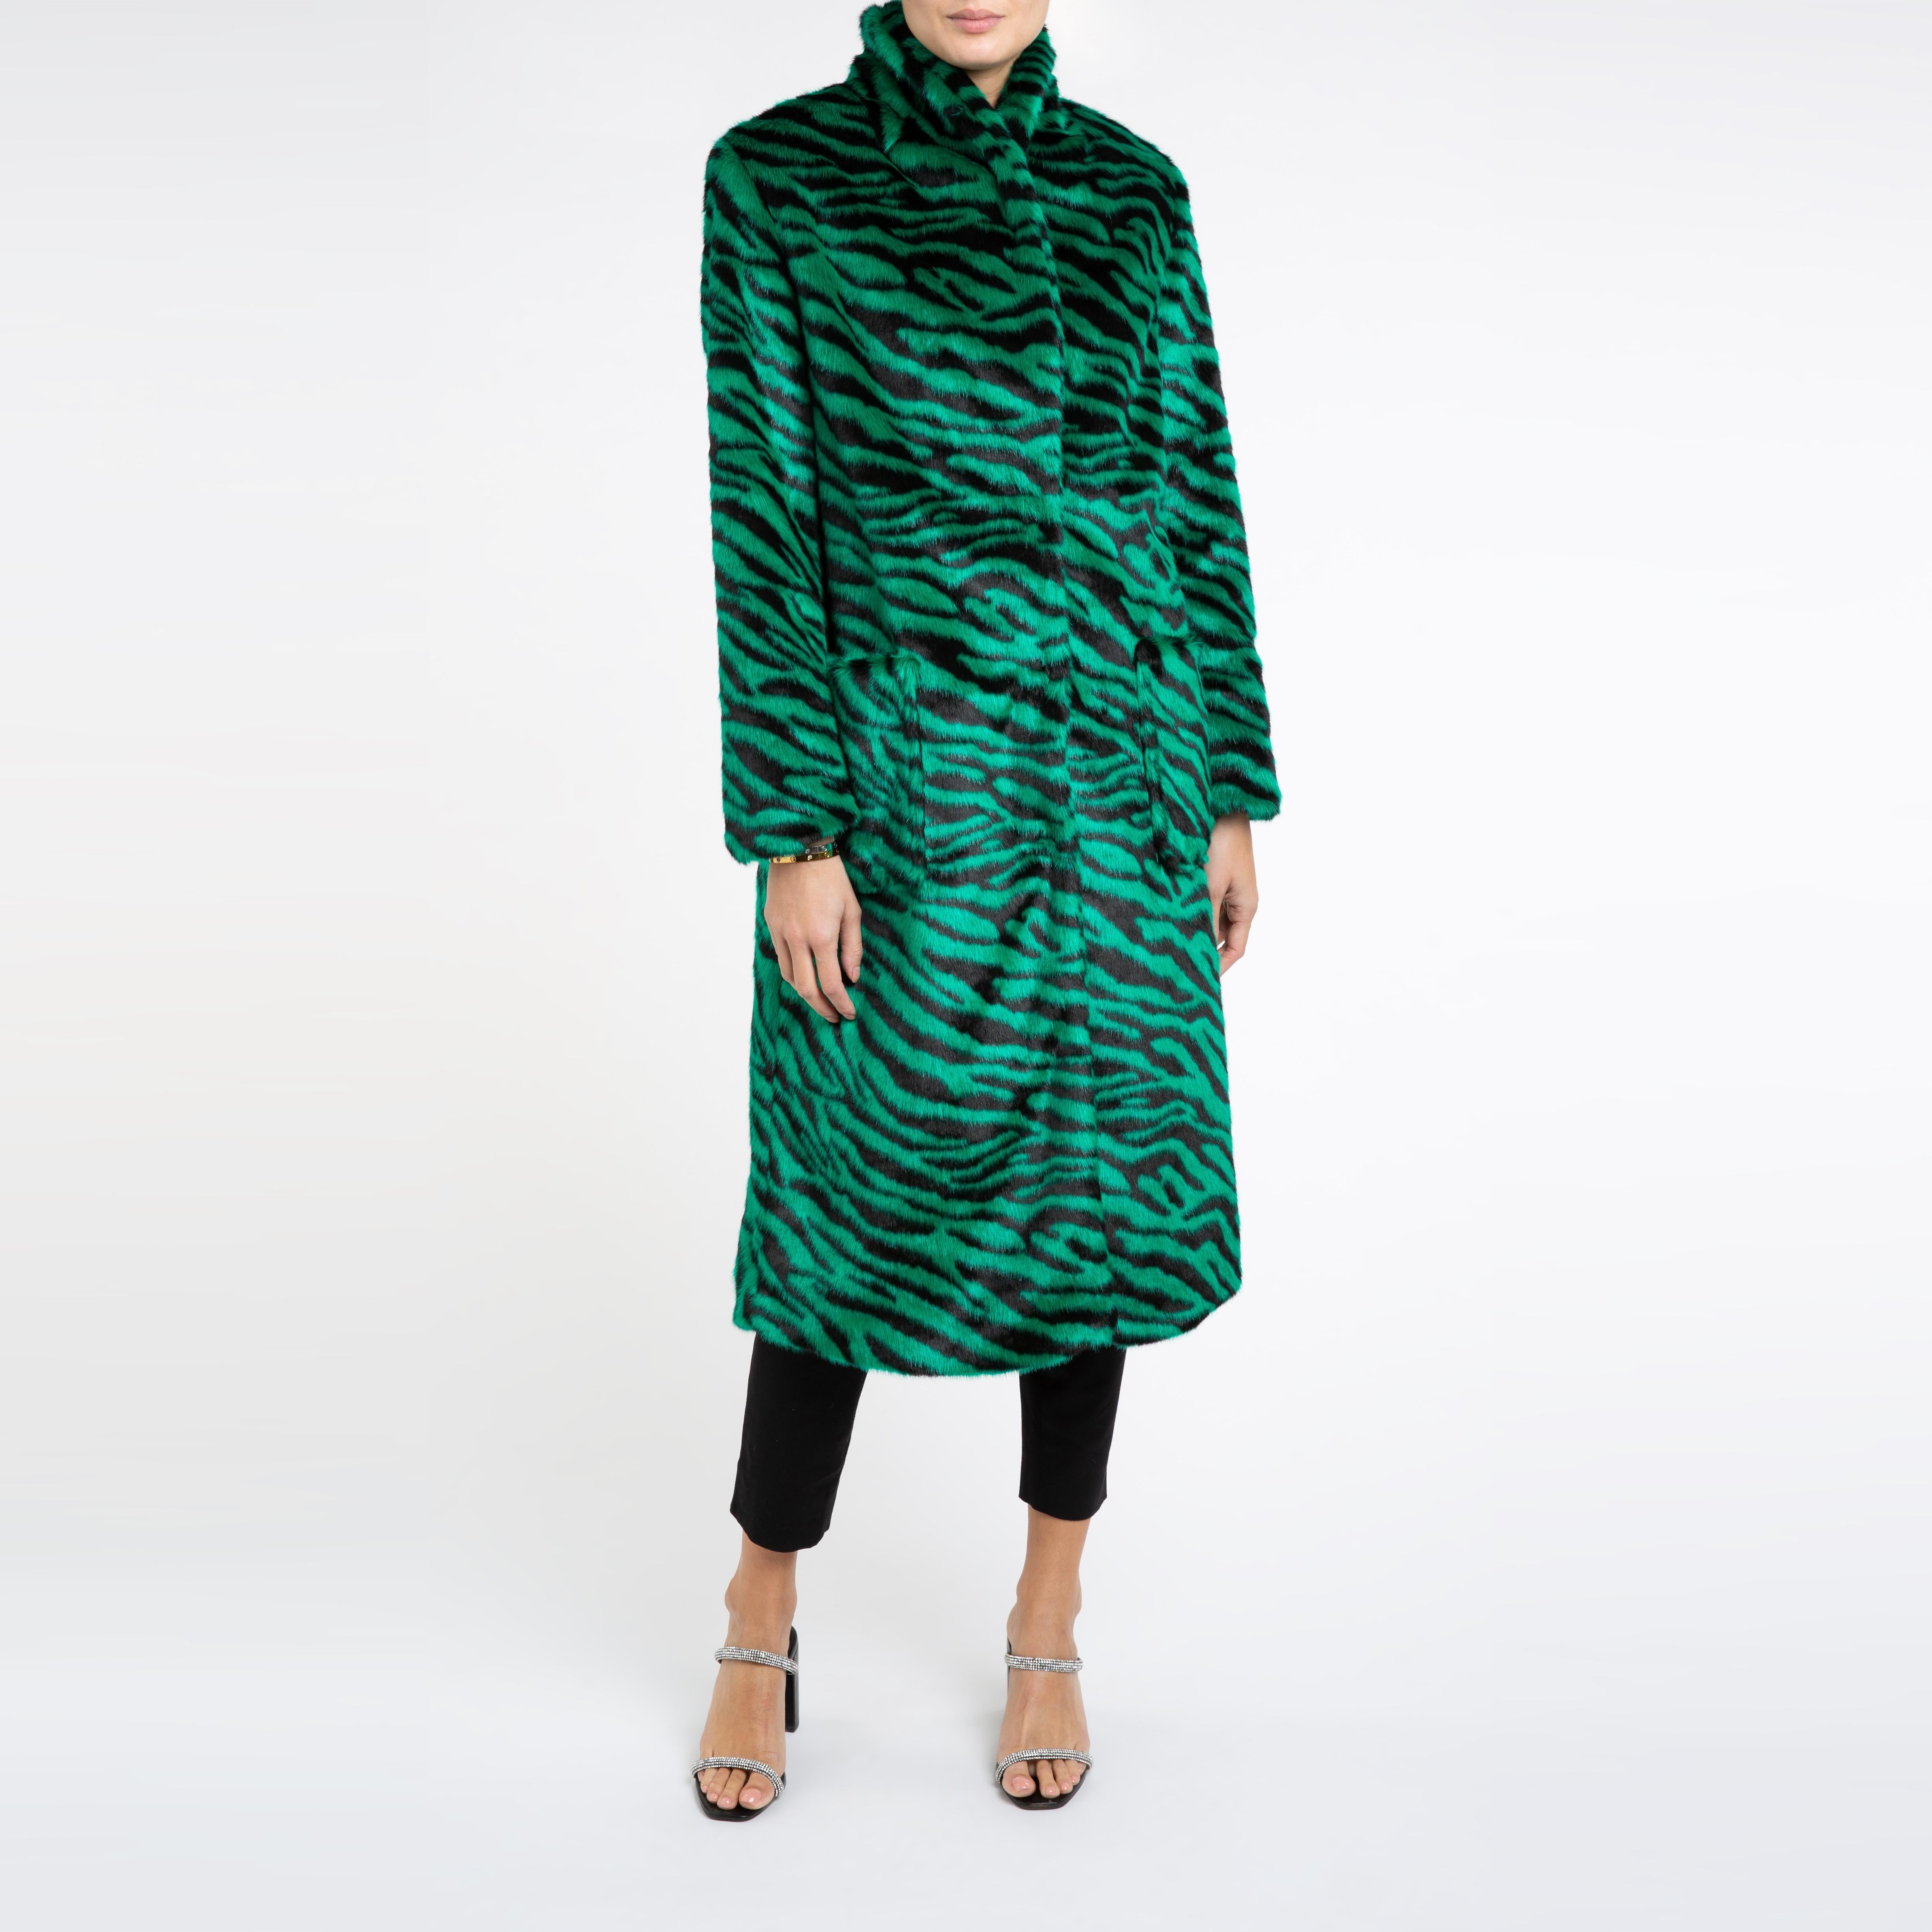 Verheyen London Esmeralda Faux Fur Coat in Emerald Green Zebra Print size uk 14 For Sale 1